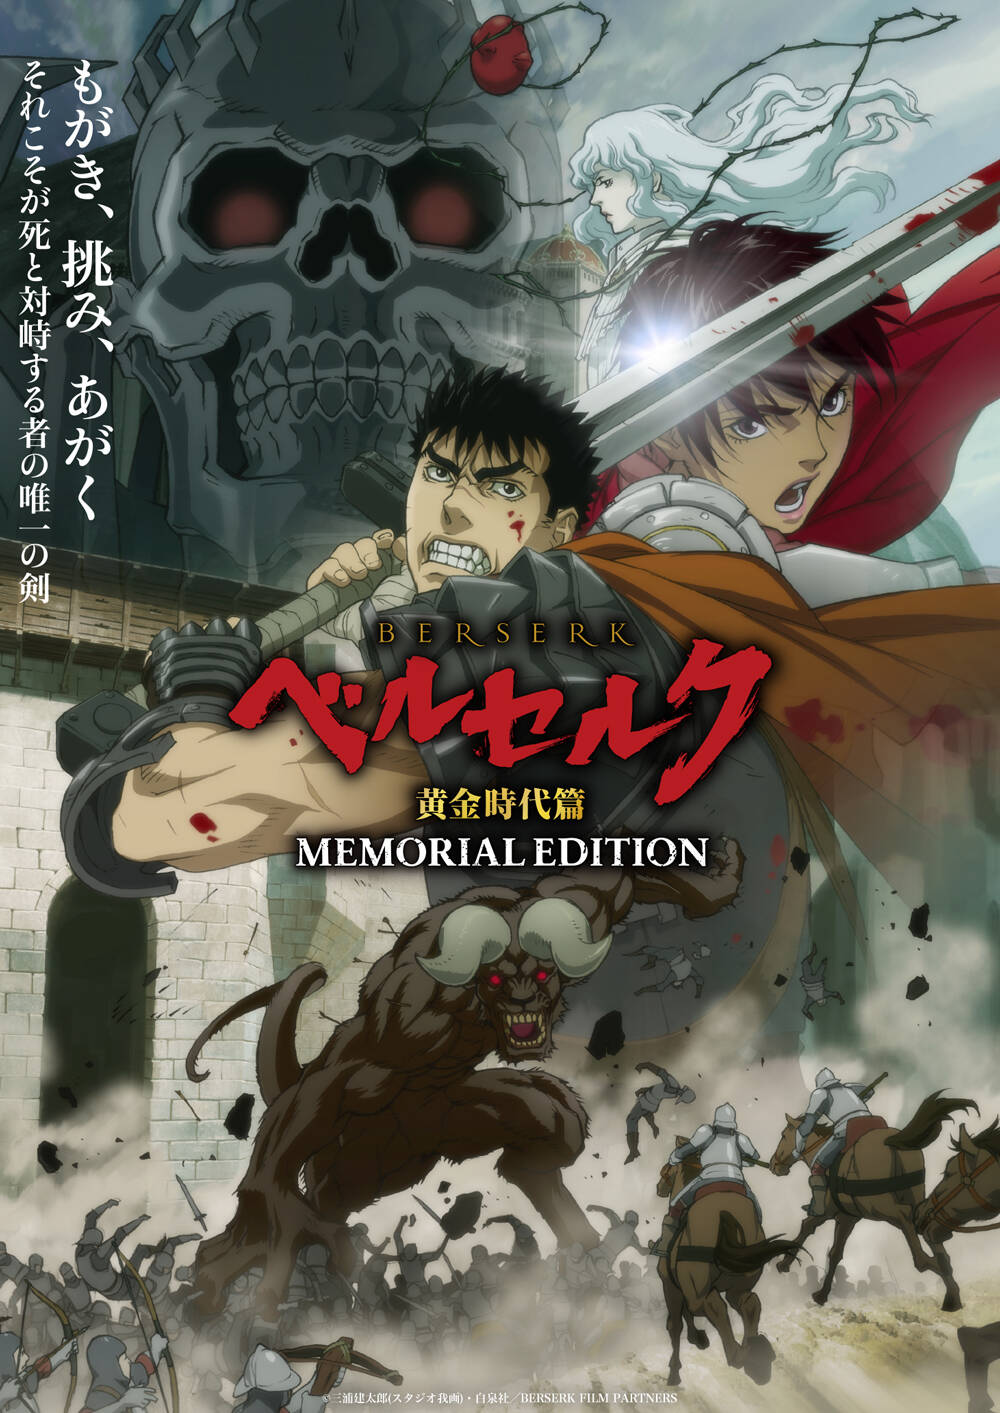 [猎户随缘压制] 剑风传奇/烙印勇士 黄金时代篇 MEMORIAL EDITION Berserk: Ougon Jidai-hen - Memorial Edition [01] [1080p] [简中内嵌] [2022年10月番]